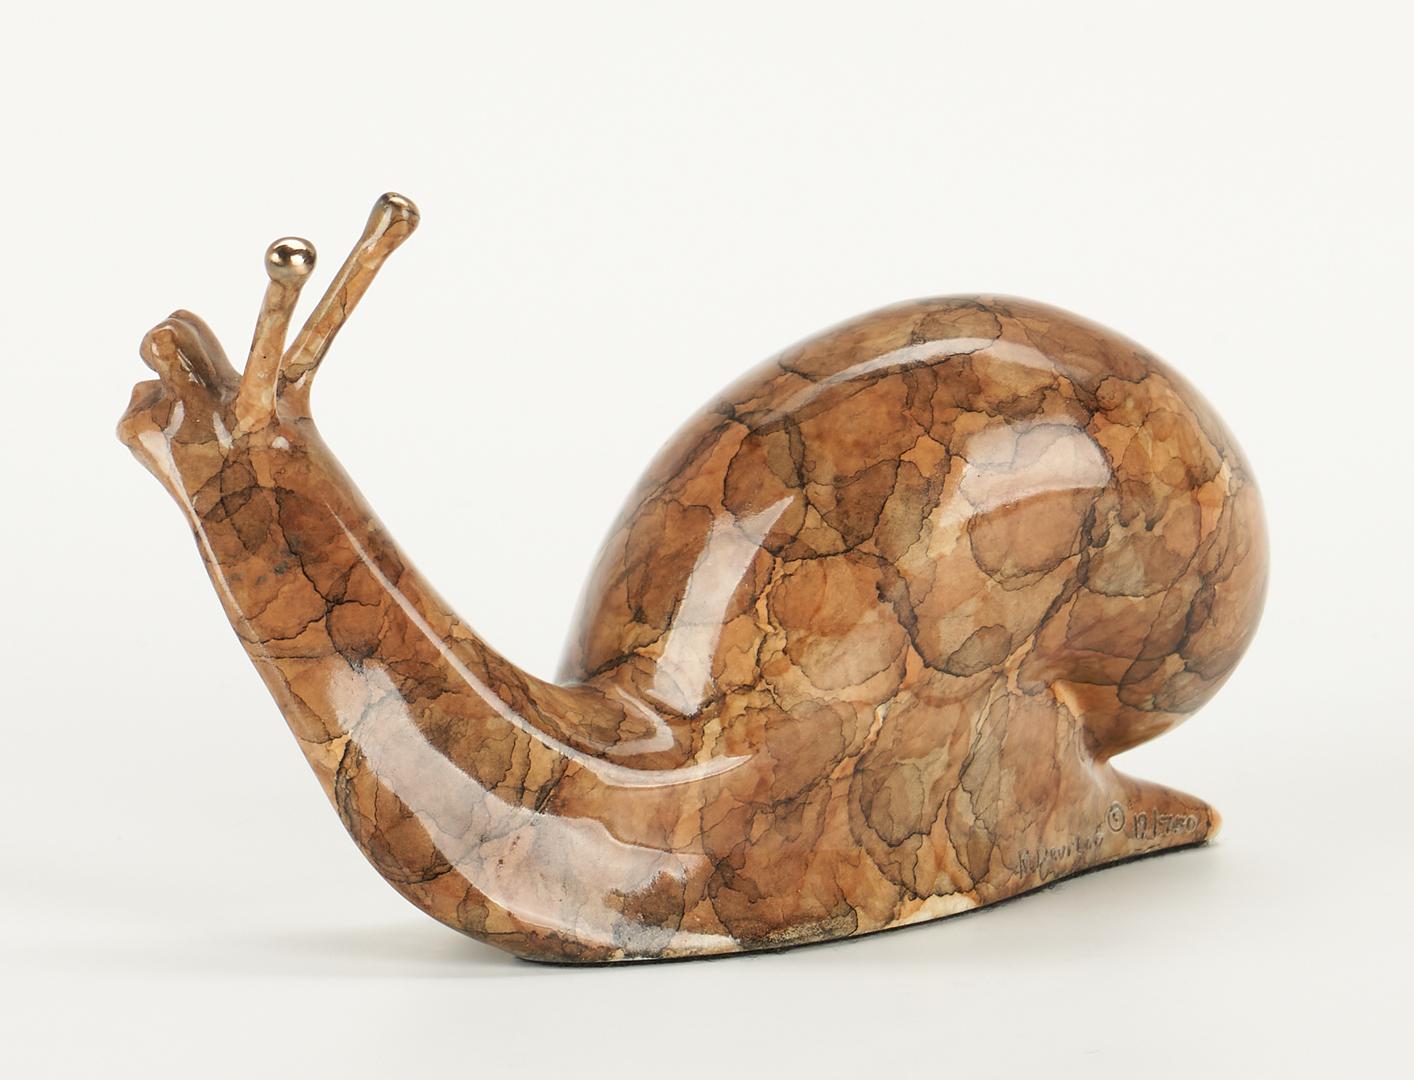 2 Robert Deurloo Bronze Sculptures, Bison and Snail - Image 12 of 16